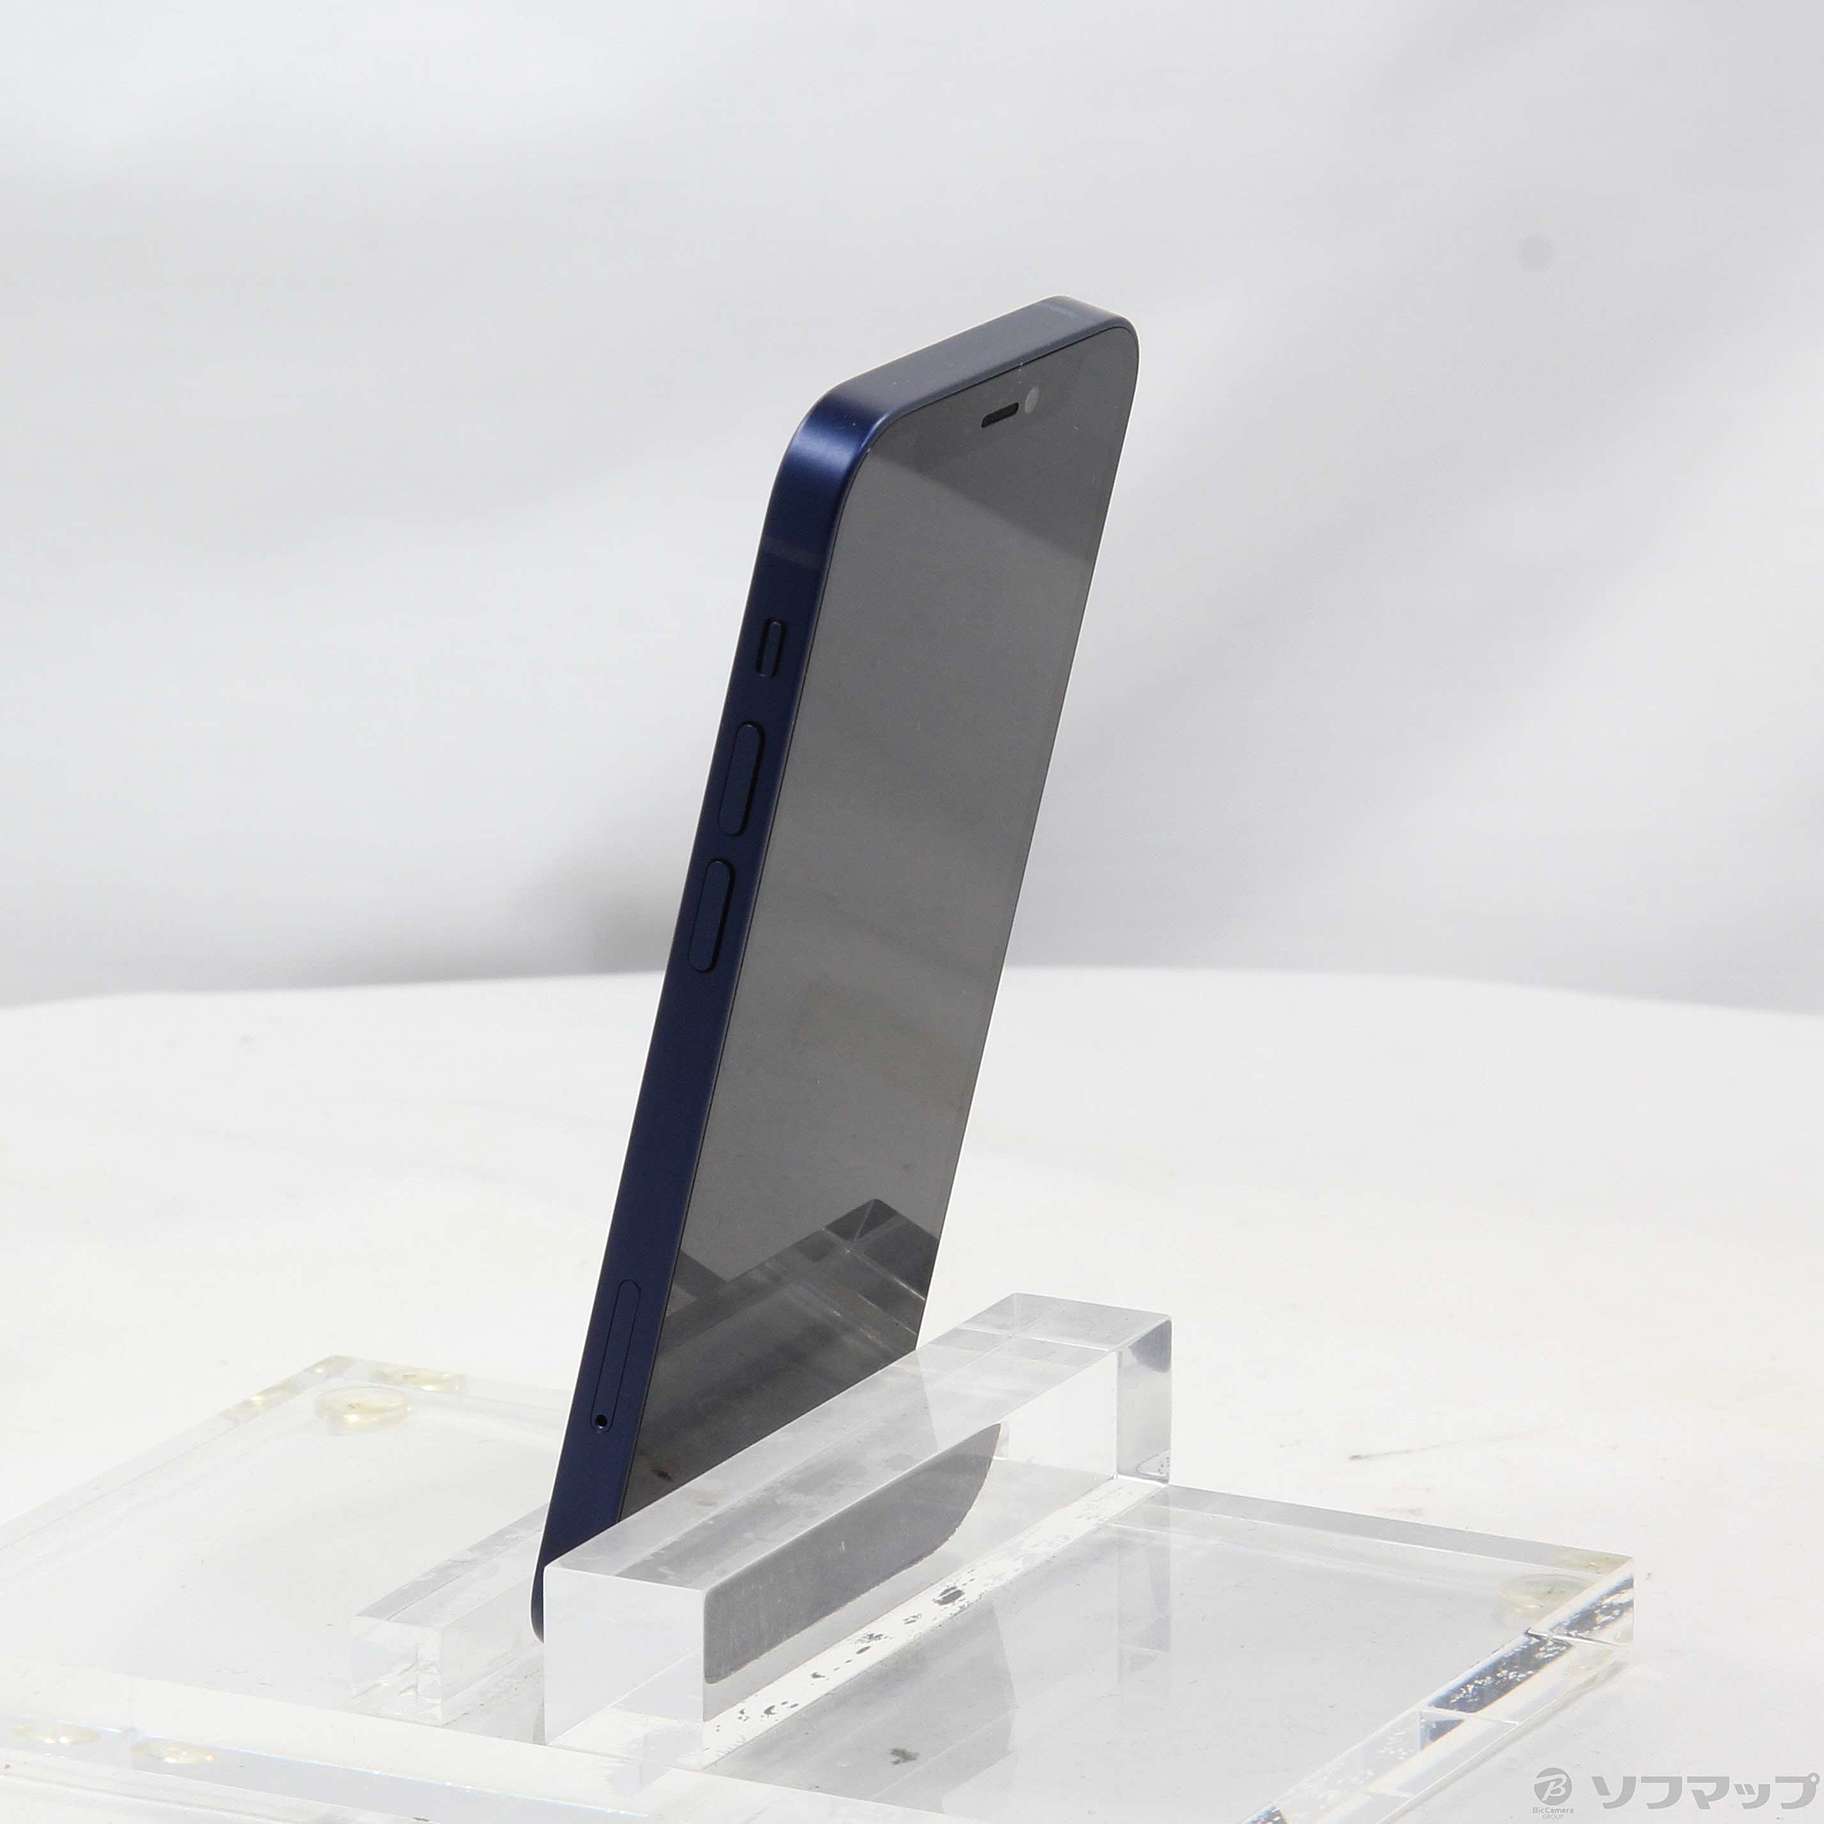 超美品 SIMﾌﾘｰ iPhone12 mini 64GB Blue P53